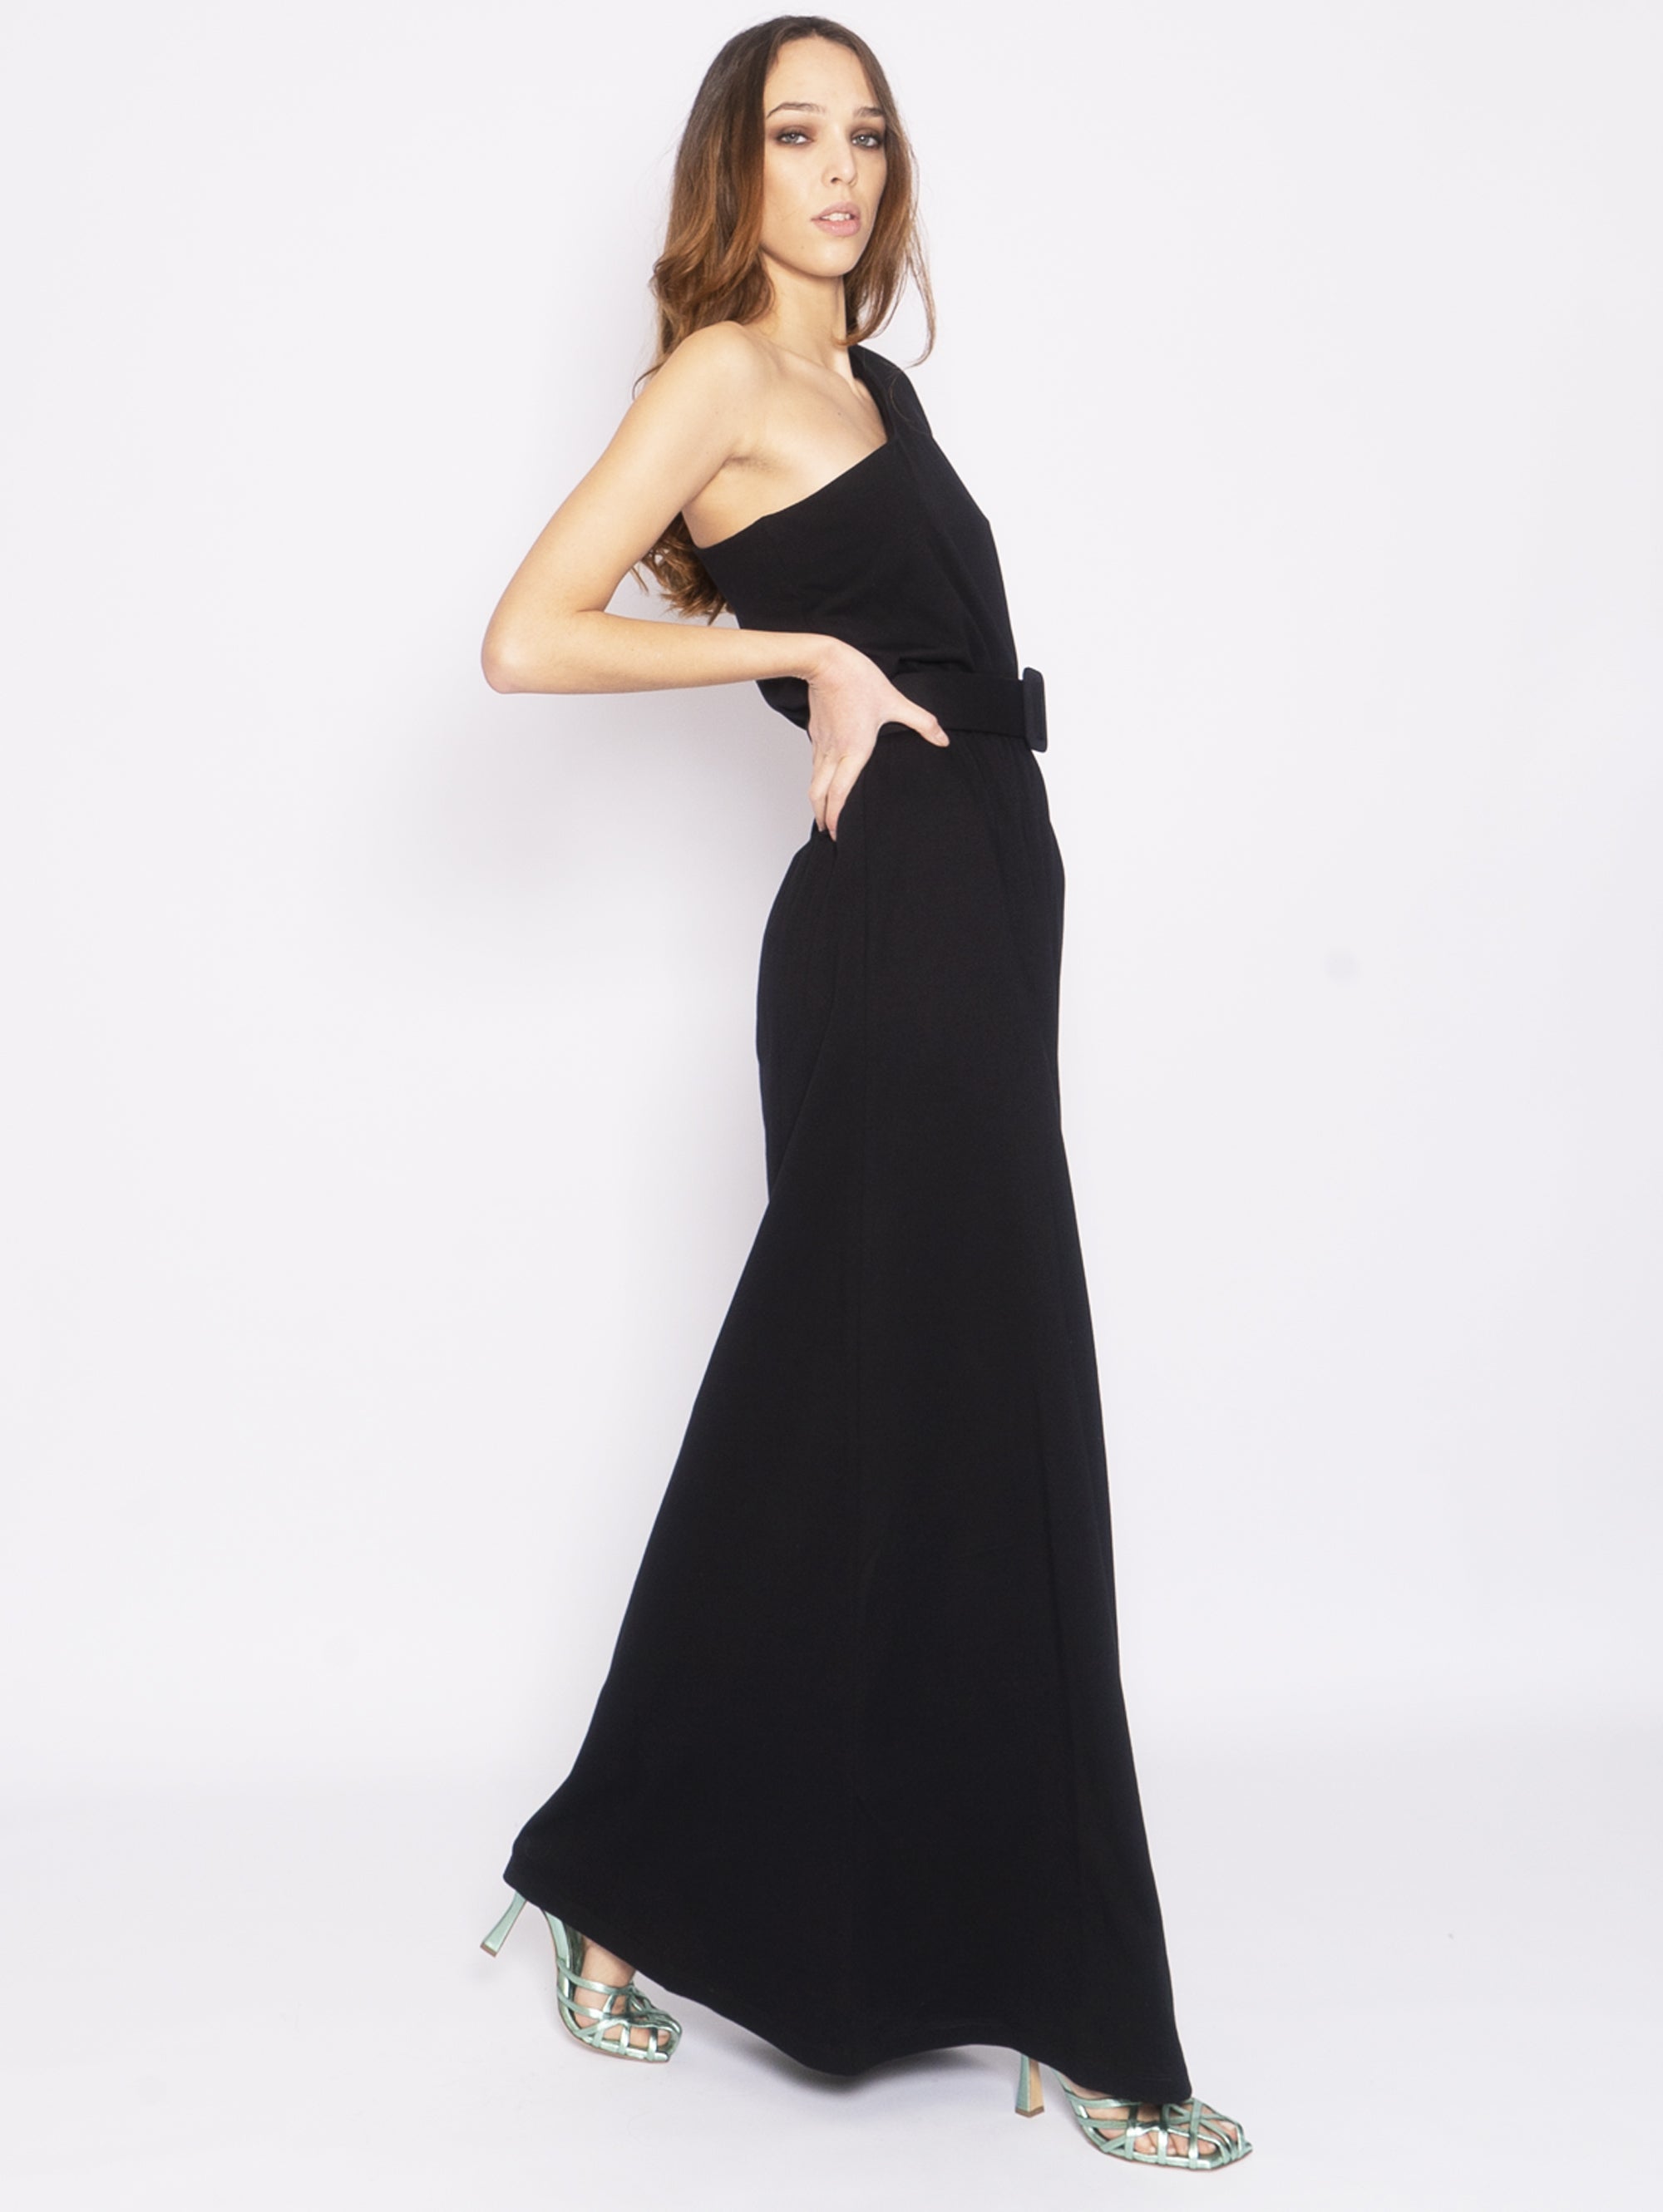 Mono-Schulter-Kleid aus schwarzem Jersey